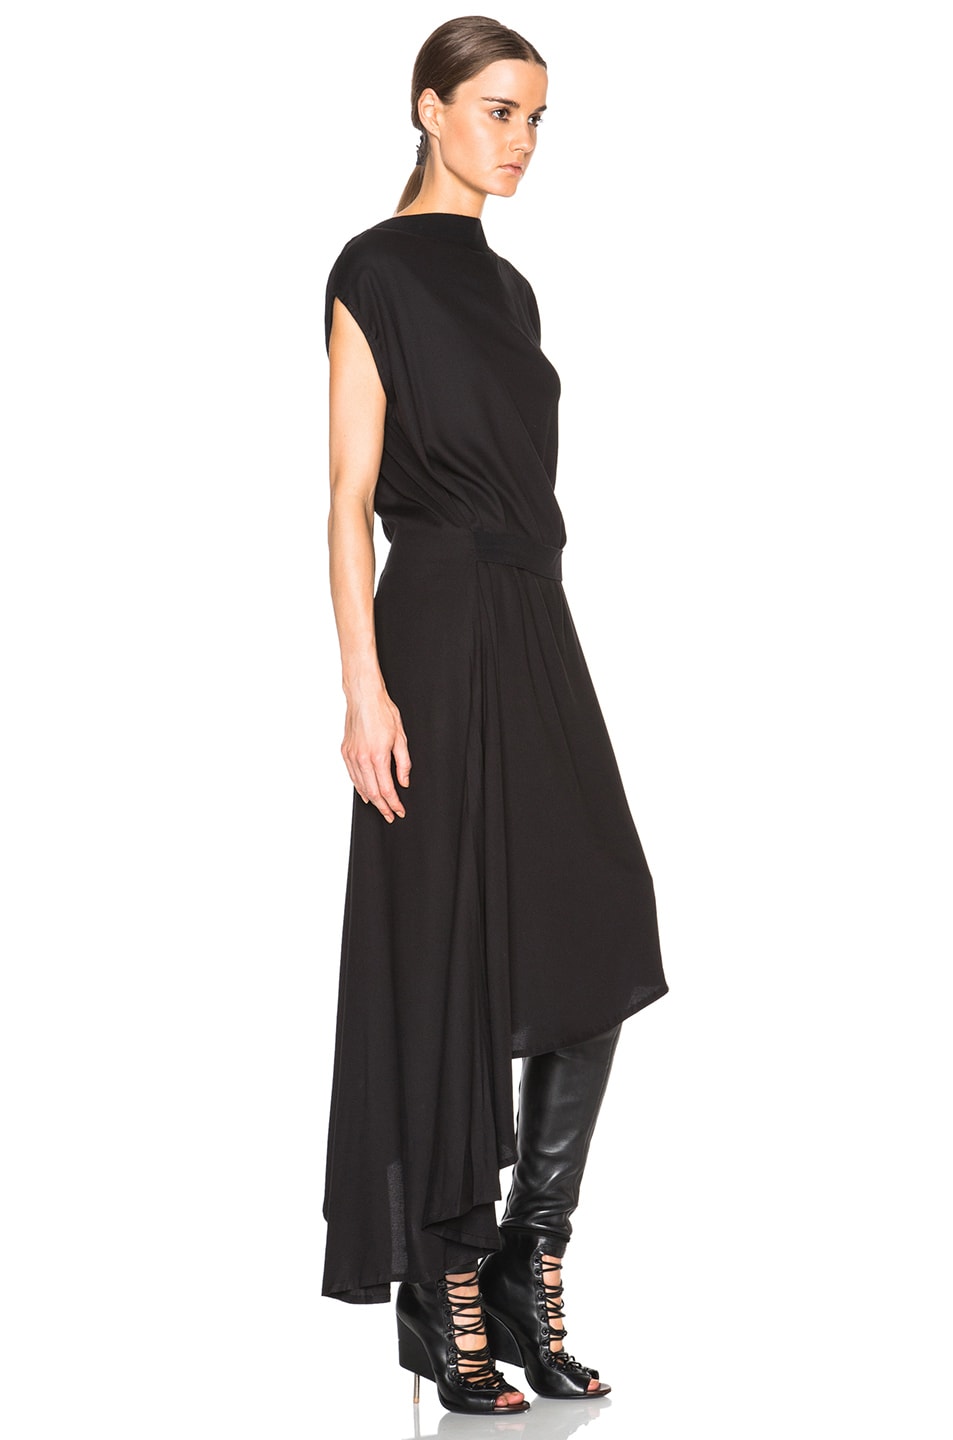 Ann Demeulemeester Infinity Sleeveless Dress in Black | FWRD